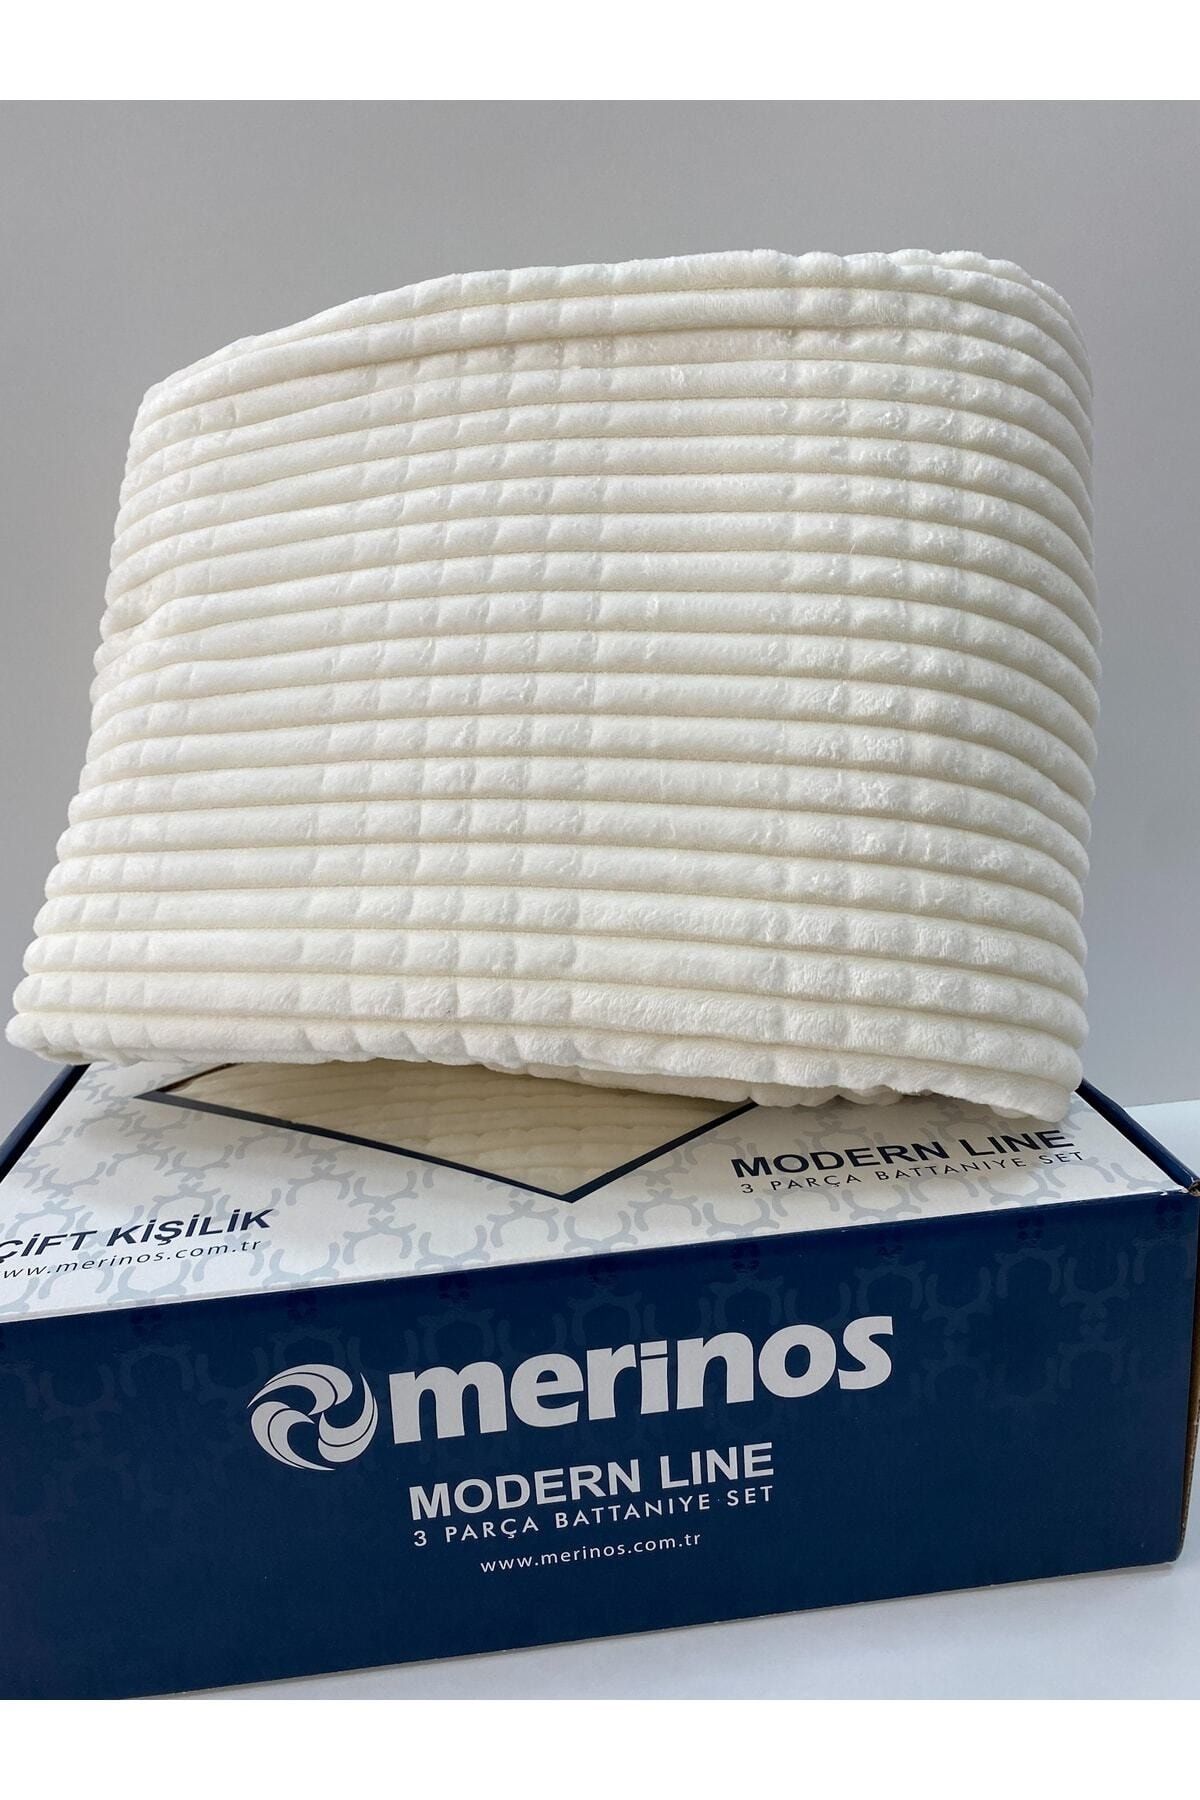 Merinos Modern Lıne 3 Prç.battaniye Ve Yatak Örtüsü Seti Kemik